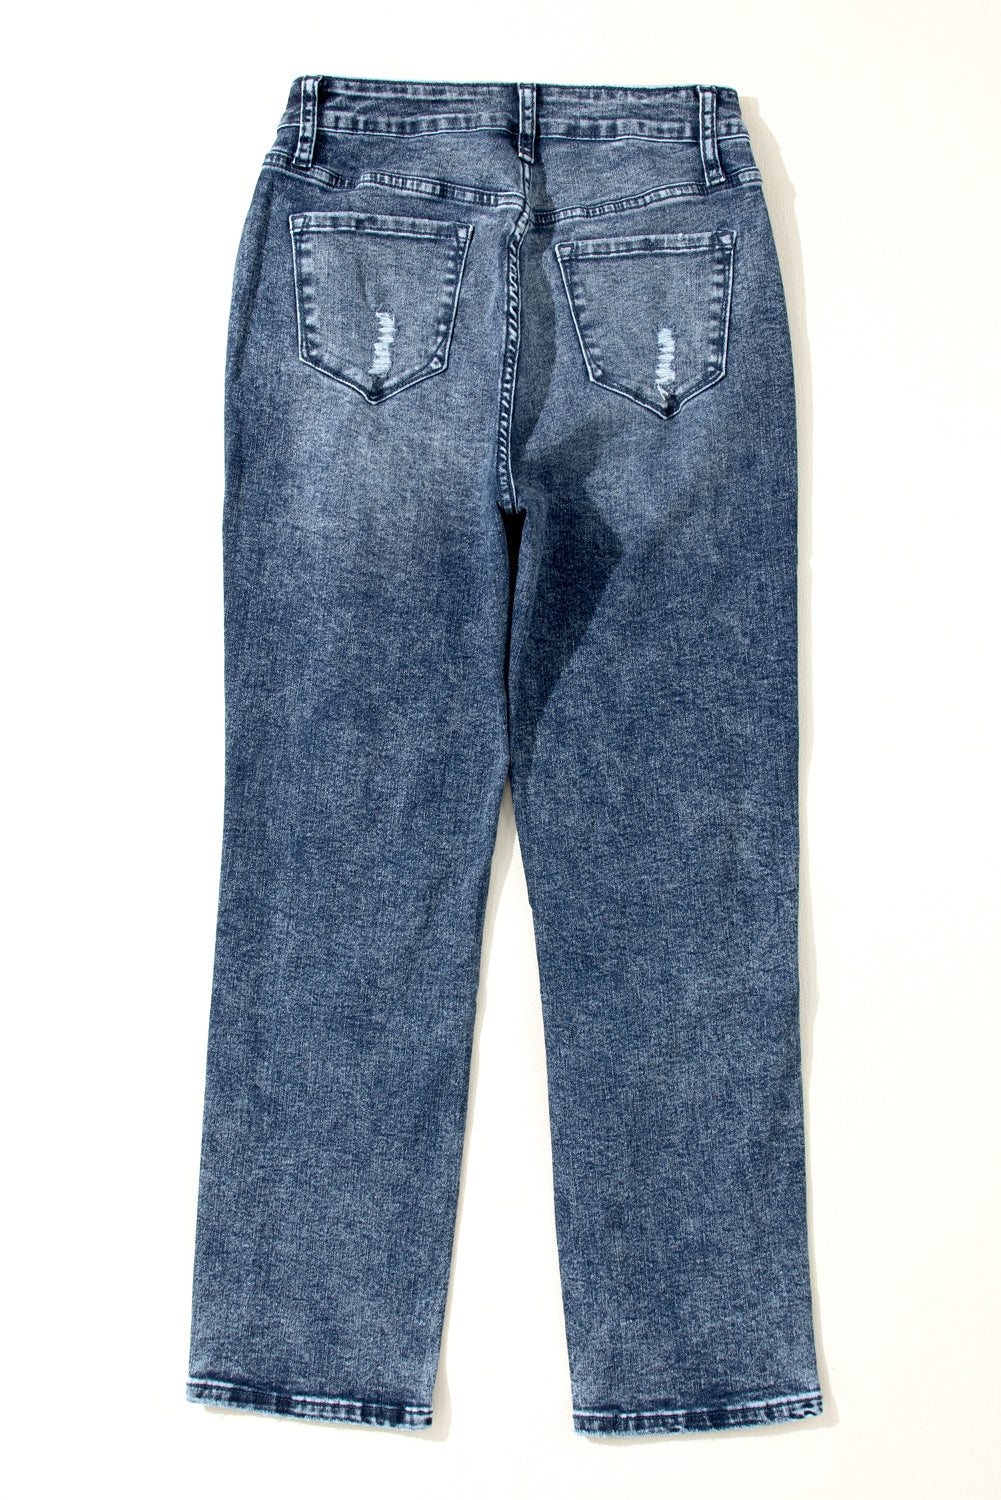 Dunkelblaue, ausgefranste Slim-Fit-Jeans mit hoher Taille und heller Waschung